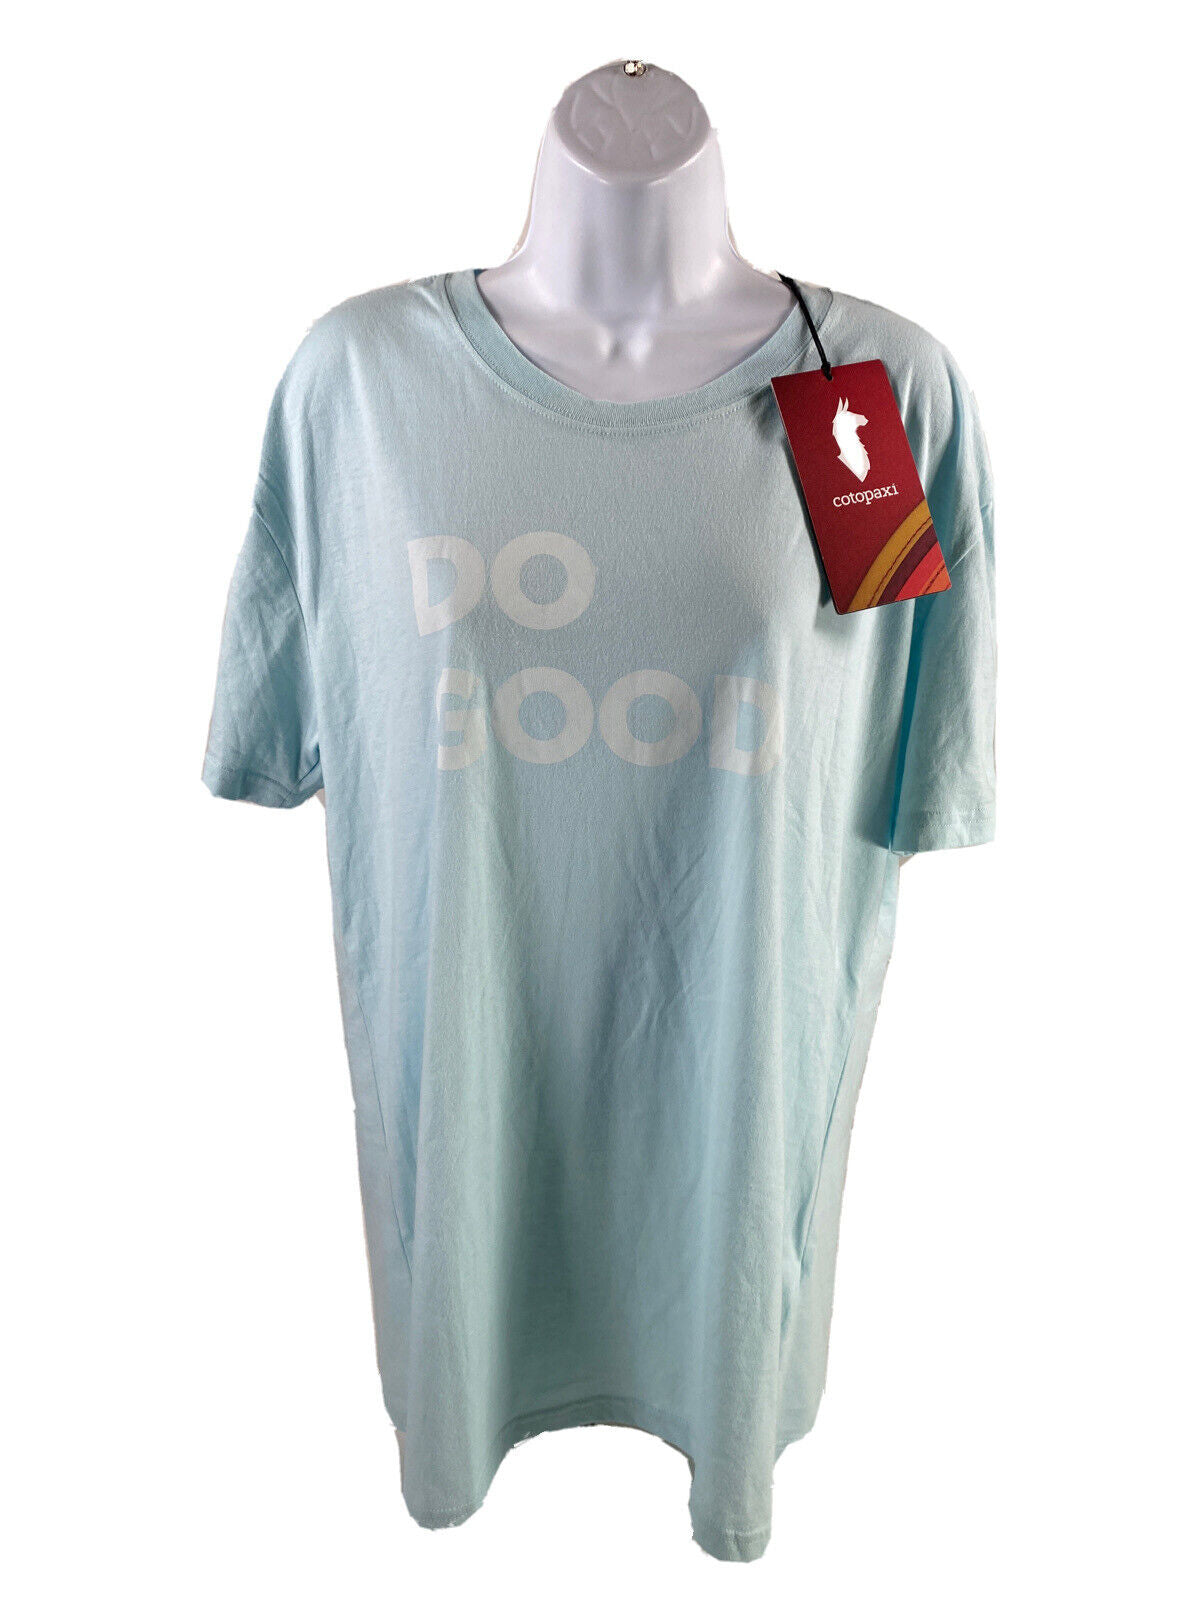 NUEVA camiseta Do Good de manga corta azul Ice de Cotopaxi para mujer - XL